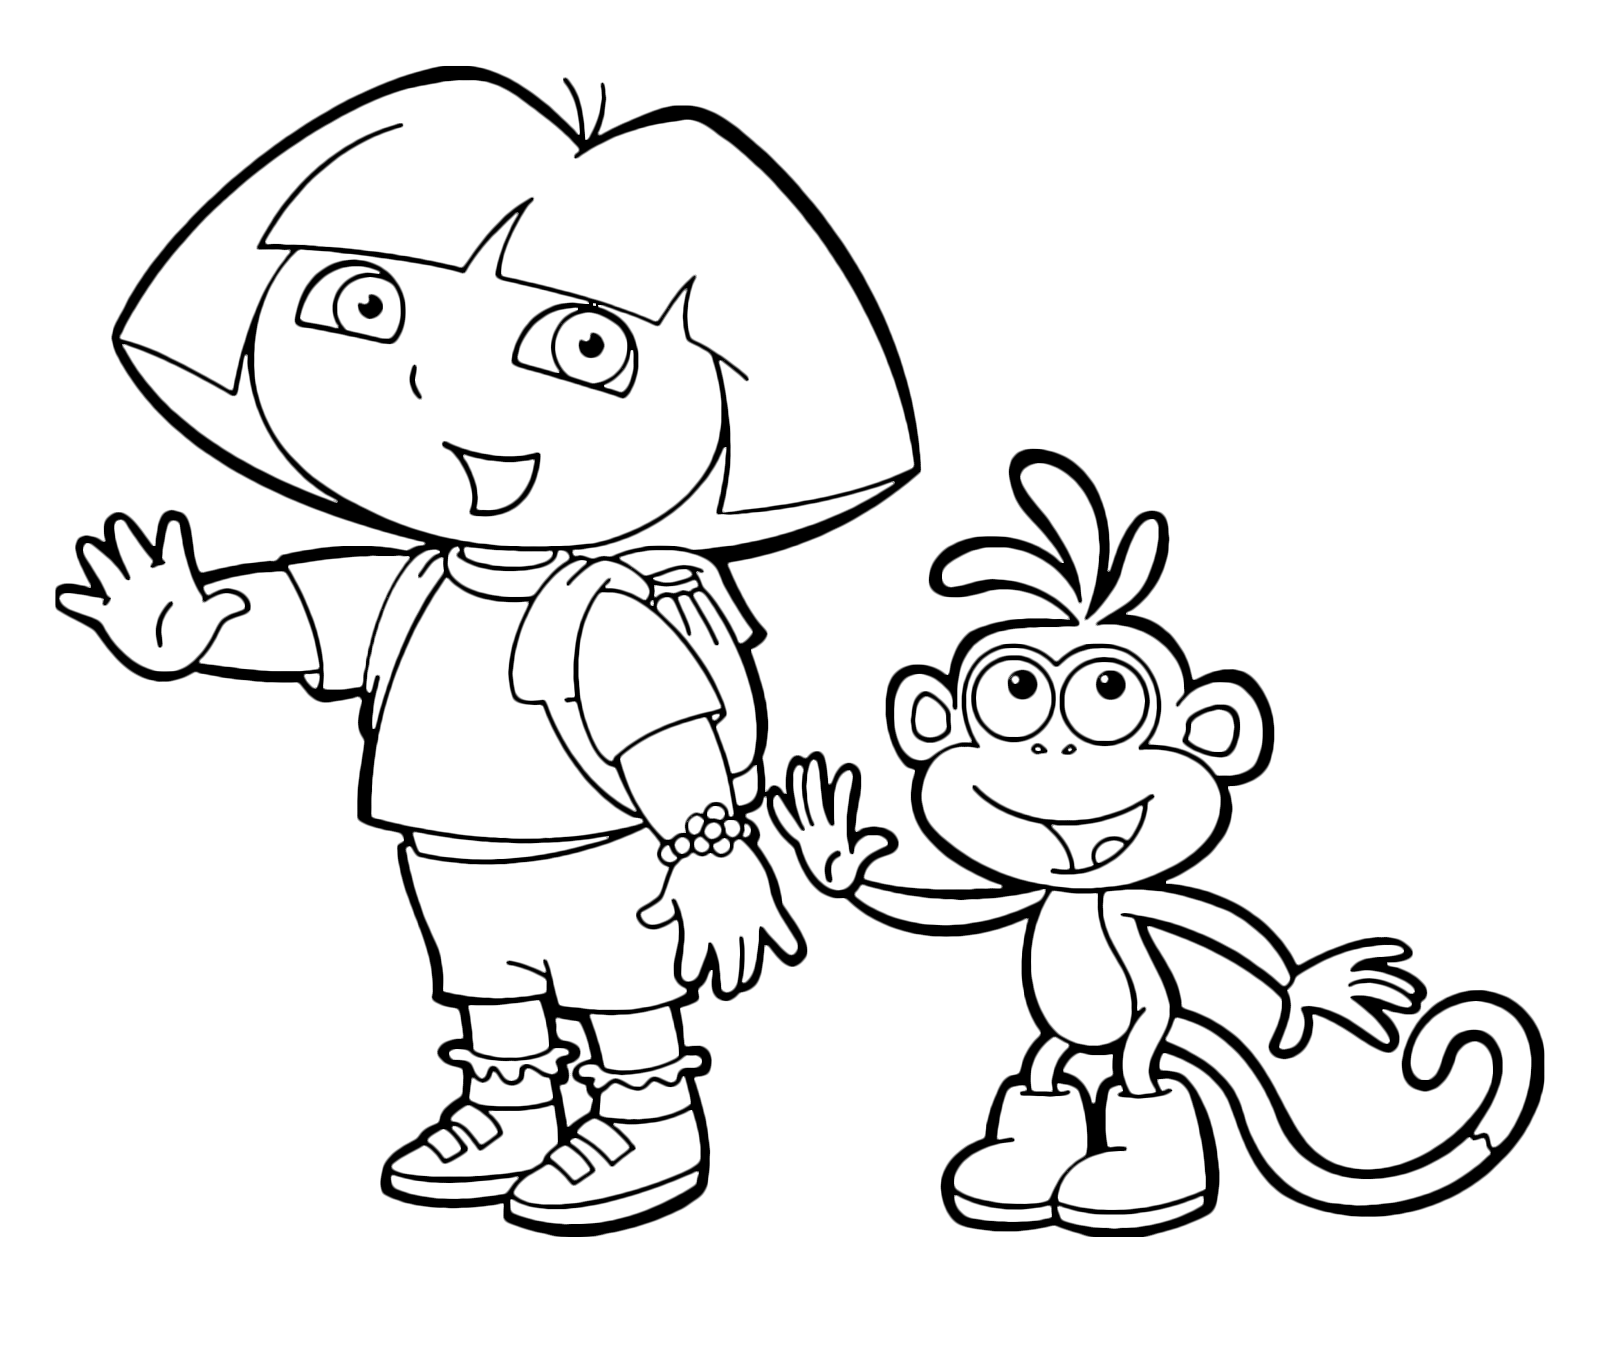 Dora l'esploratrice - Dora l'esploratrice e la sua amica scimmia Boots salutano